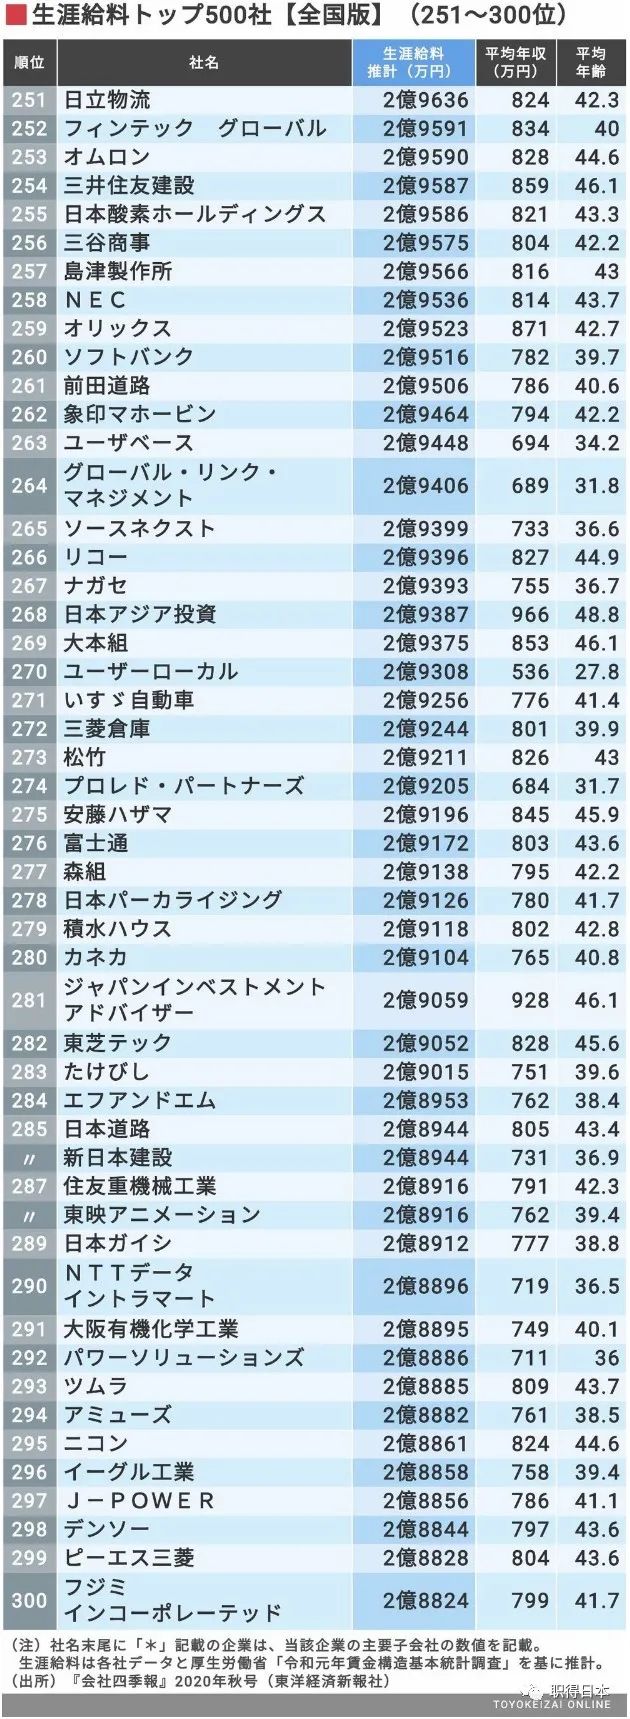 又到年终总结时 年日本企业终身薪资排名top300 超三亿日元公司又增加 职得worthjp 微信公众号文章阅读 Wemp